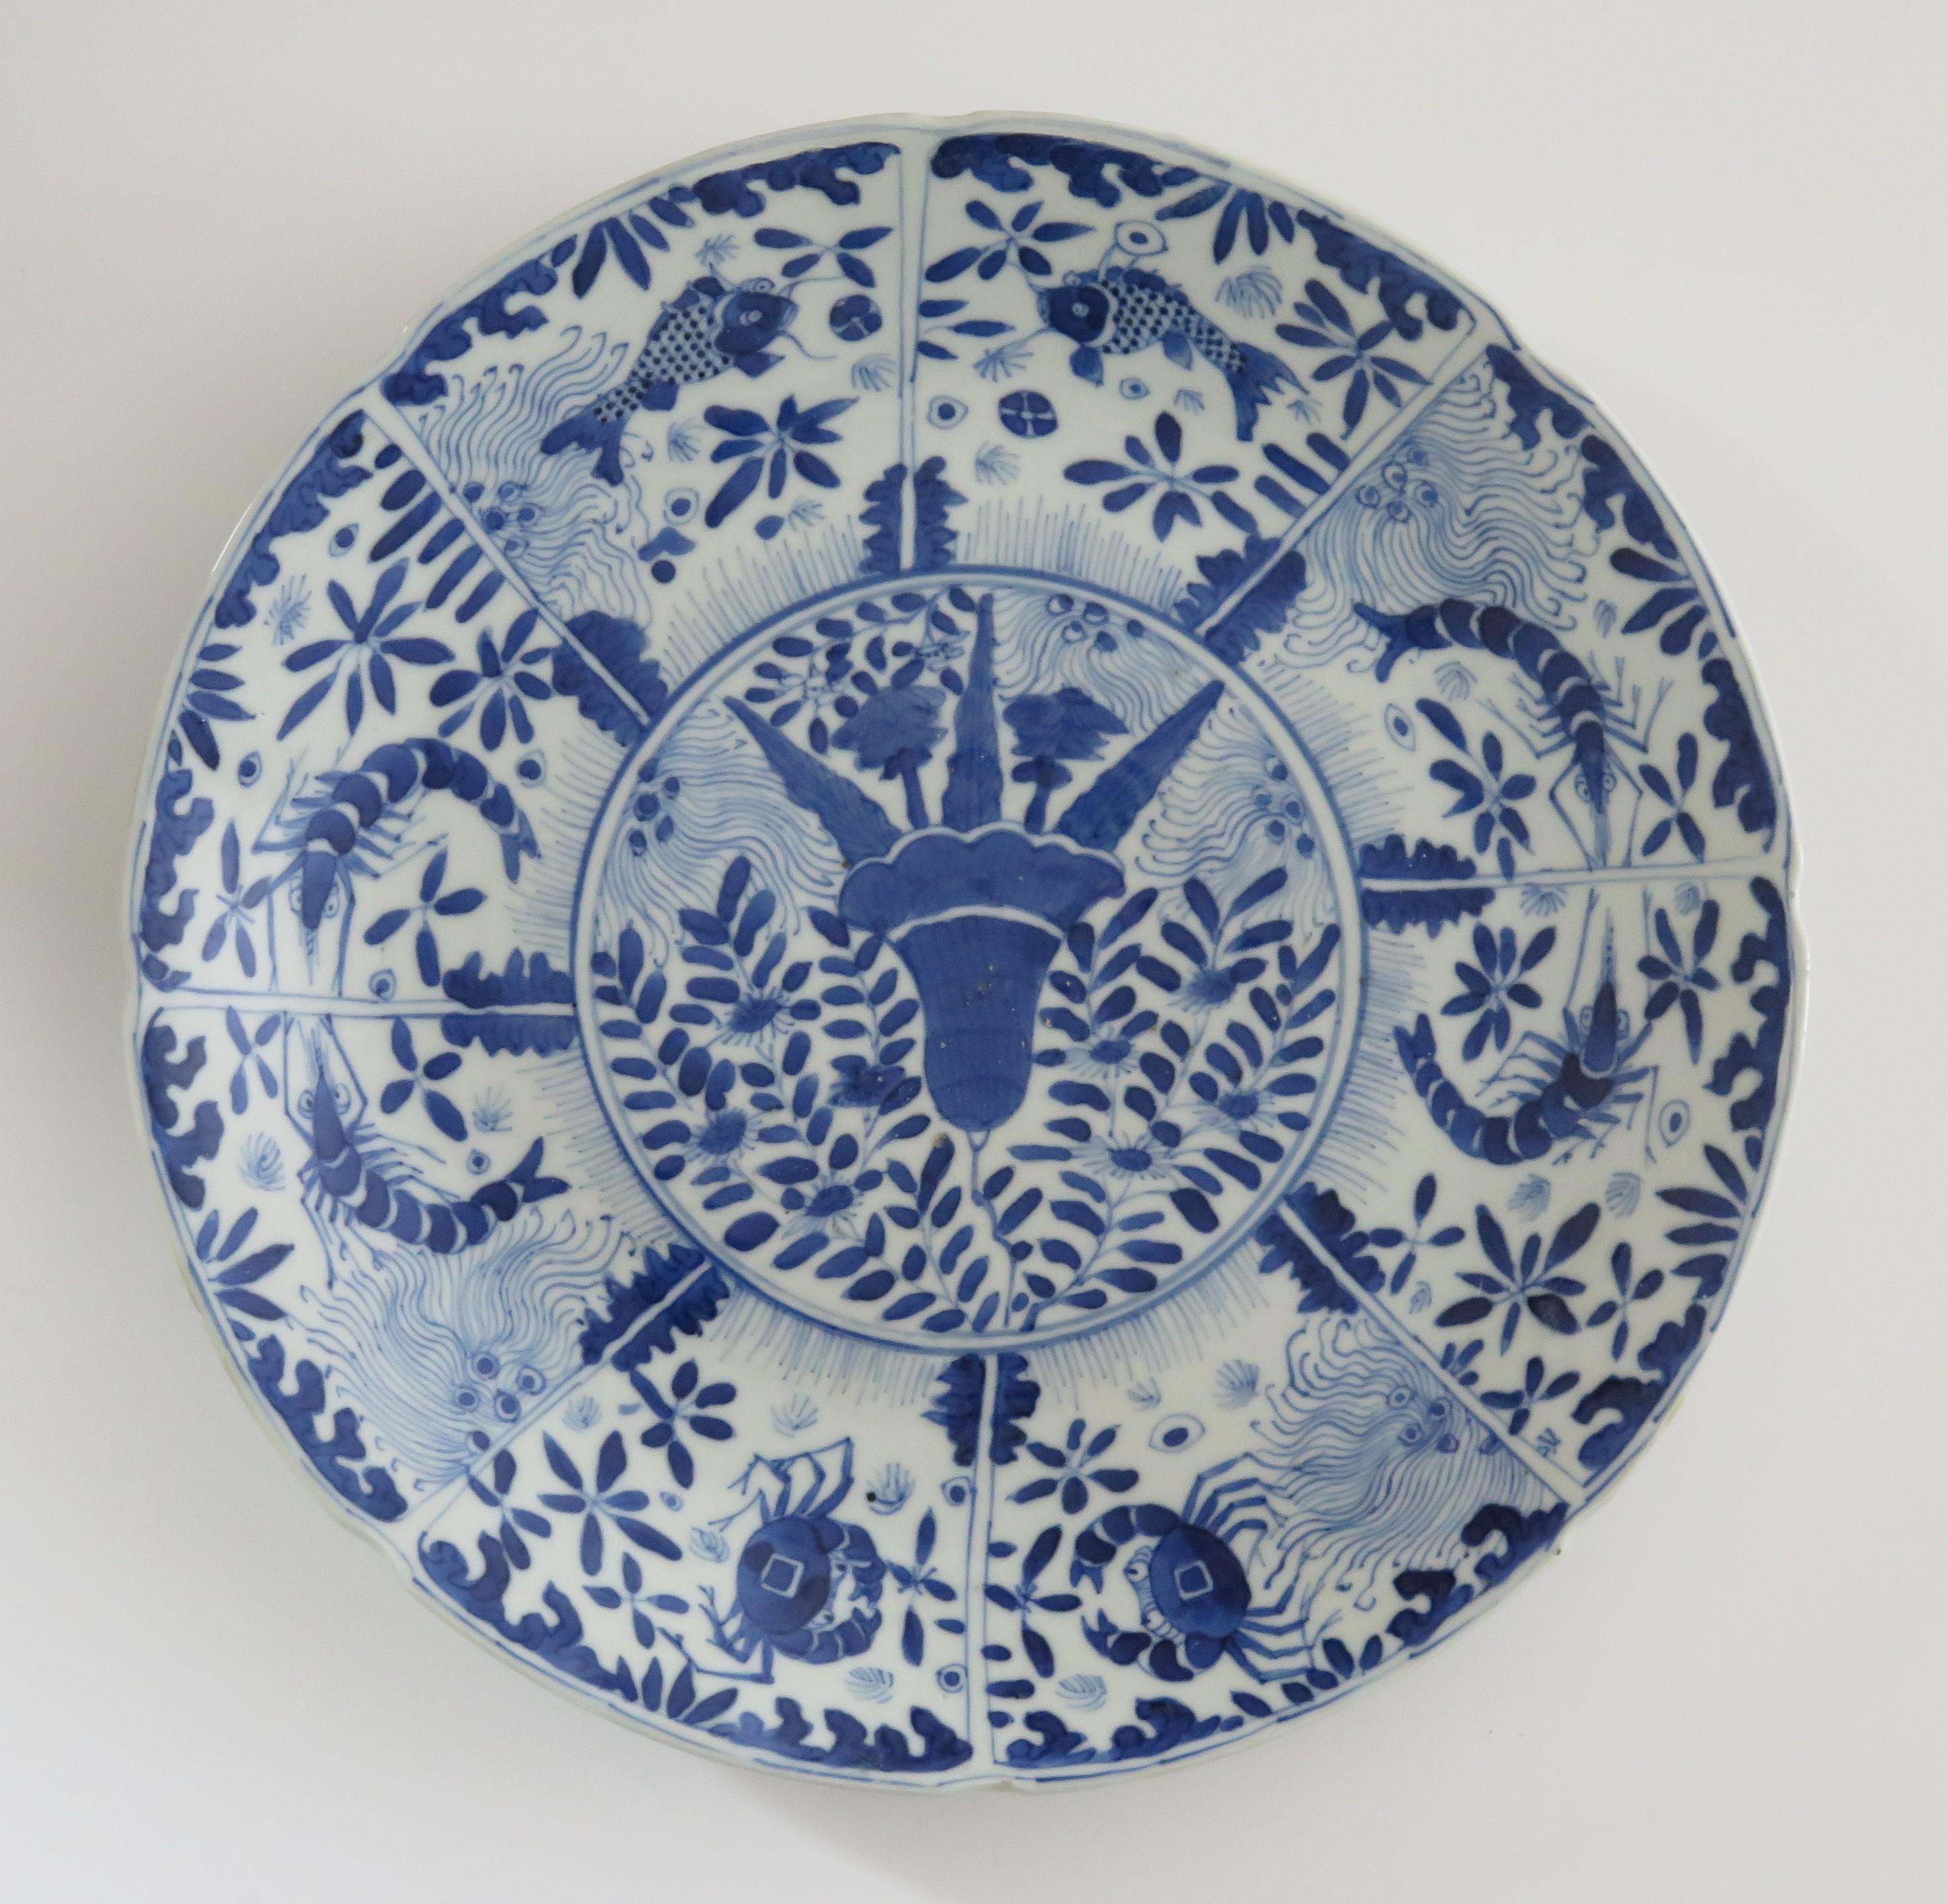 Dies ist eine schöne handbemalte, blau-weiße chinesische Porzellanschale oder -teller mit großem Durchmesser, die wir auf das frühe 19. Jahrhundert der Qing-Dynastie datieren.

Der Teller ist gut getöpfert, hat einen gekerbten Außenrand und eine